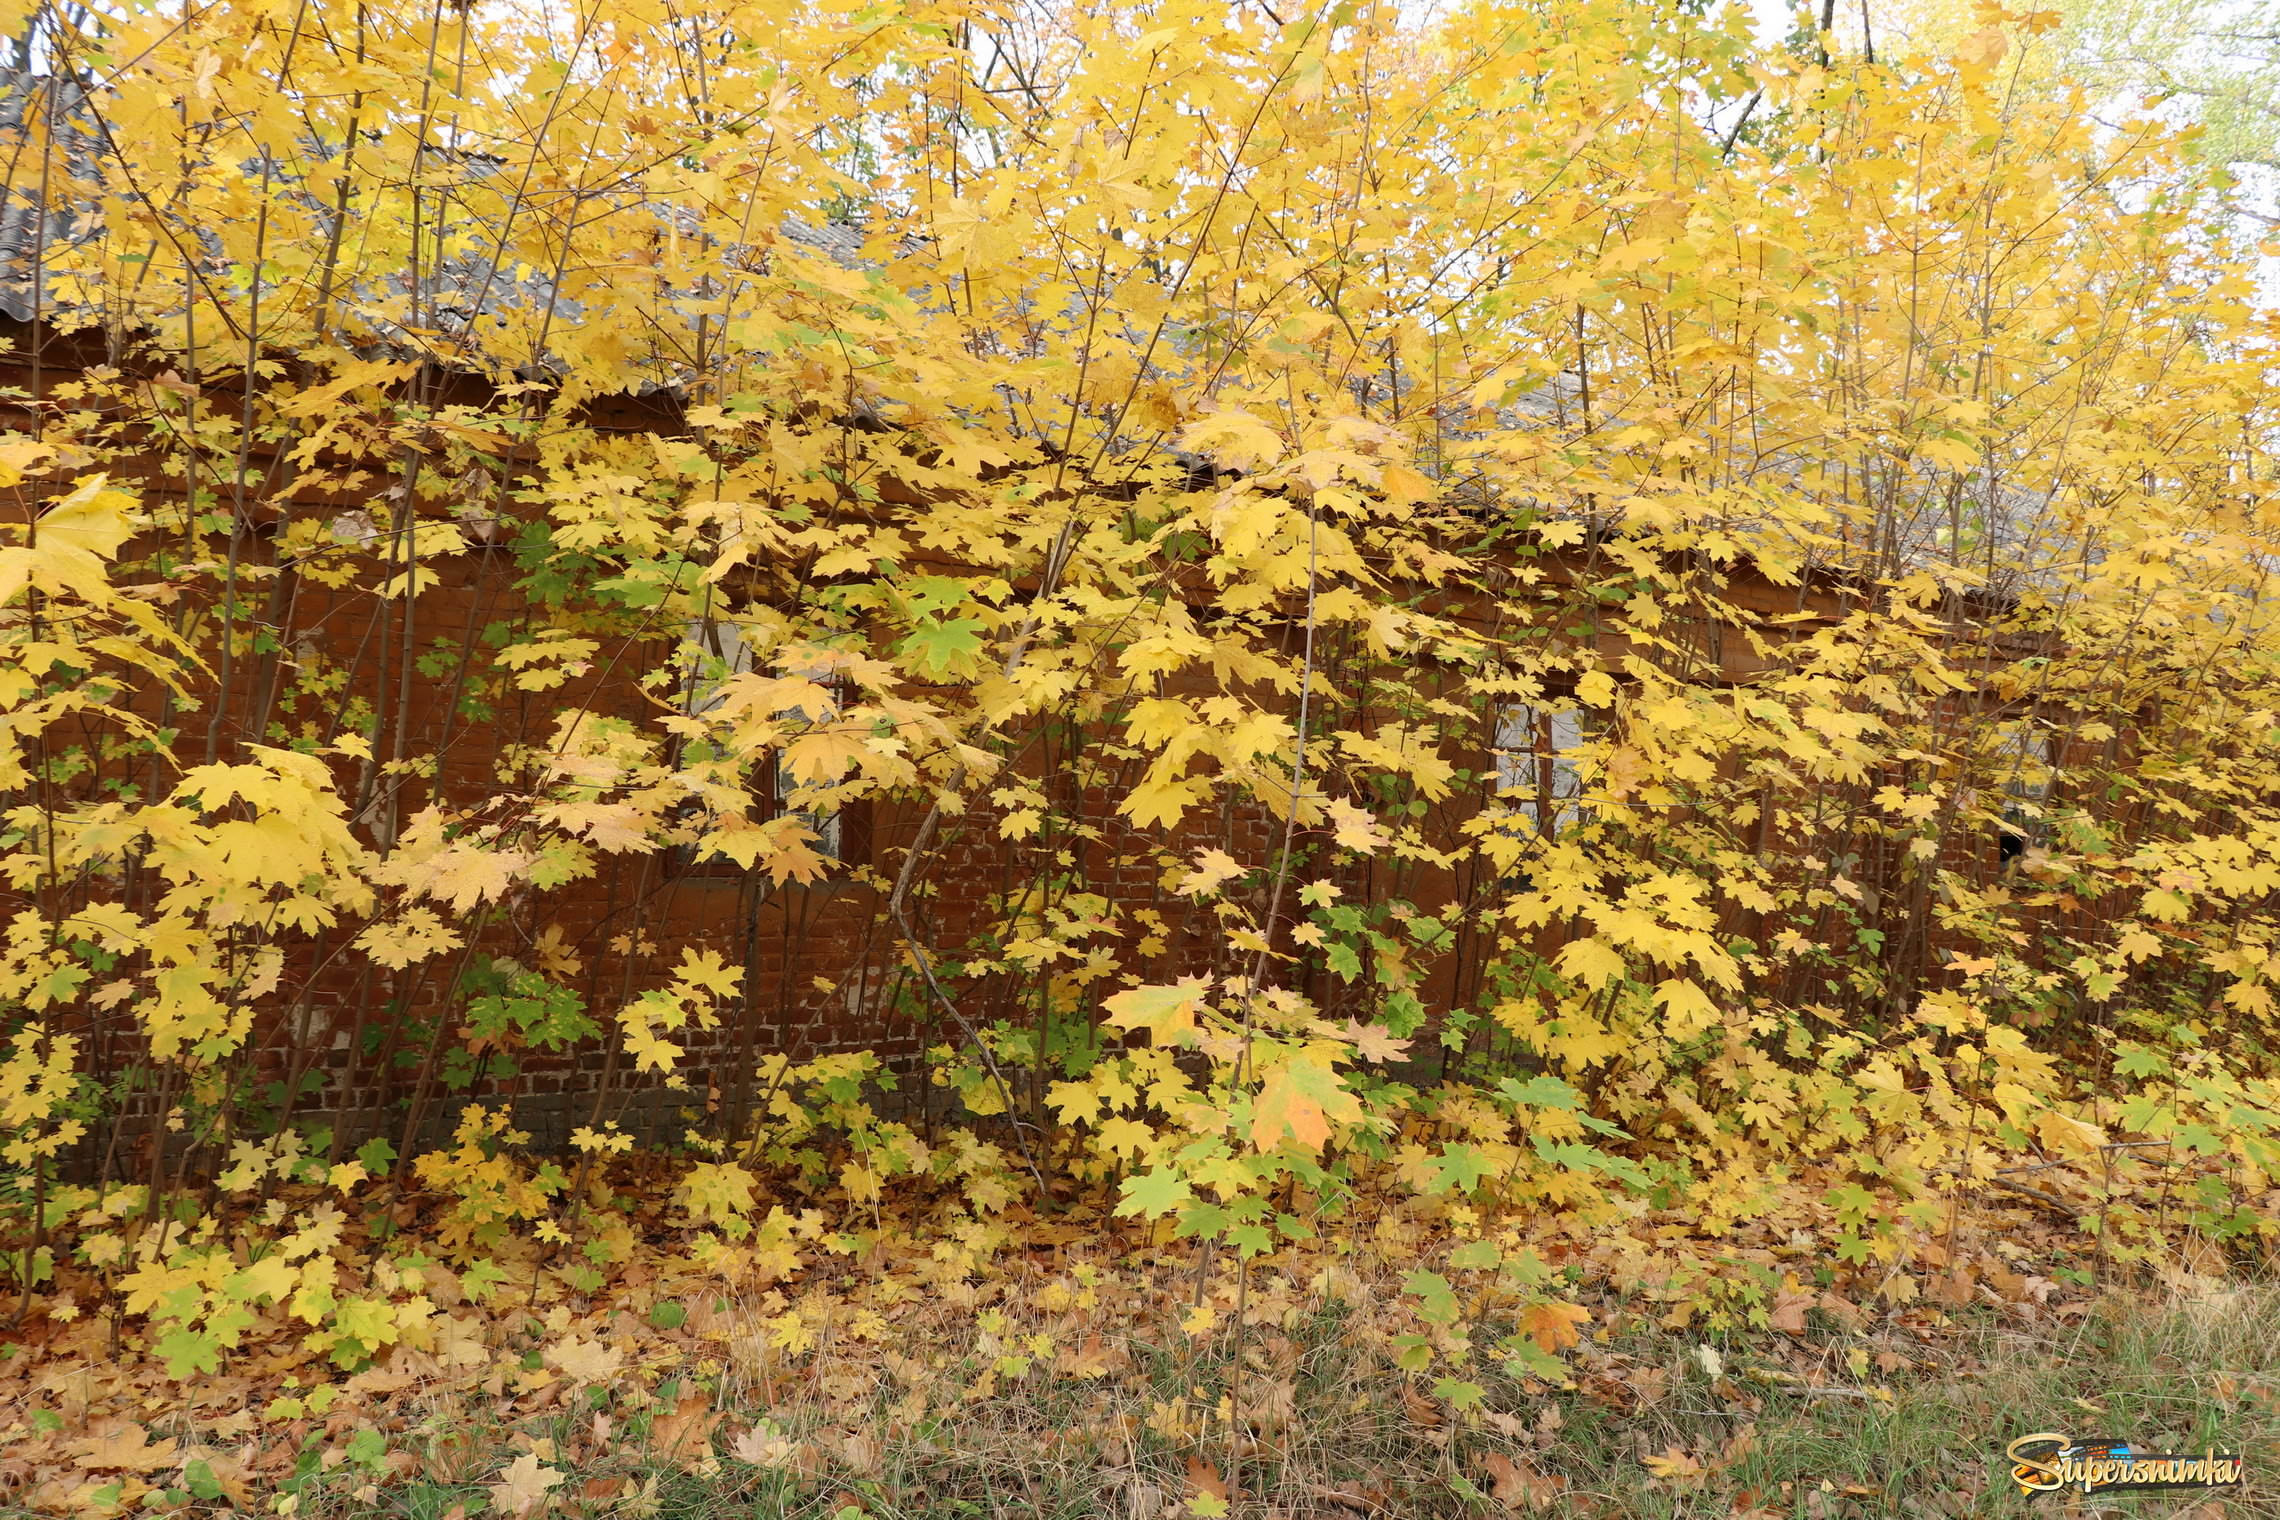 Земля засыпана жёлтою листвой.